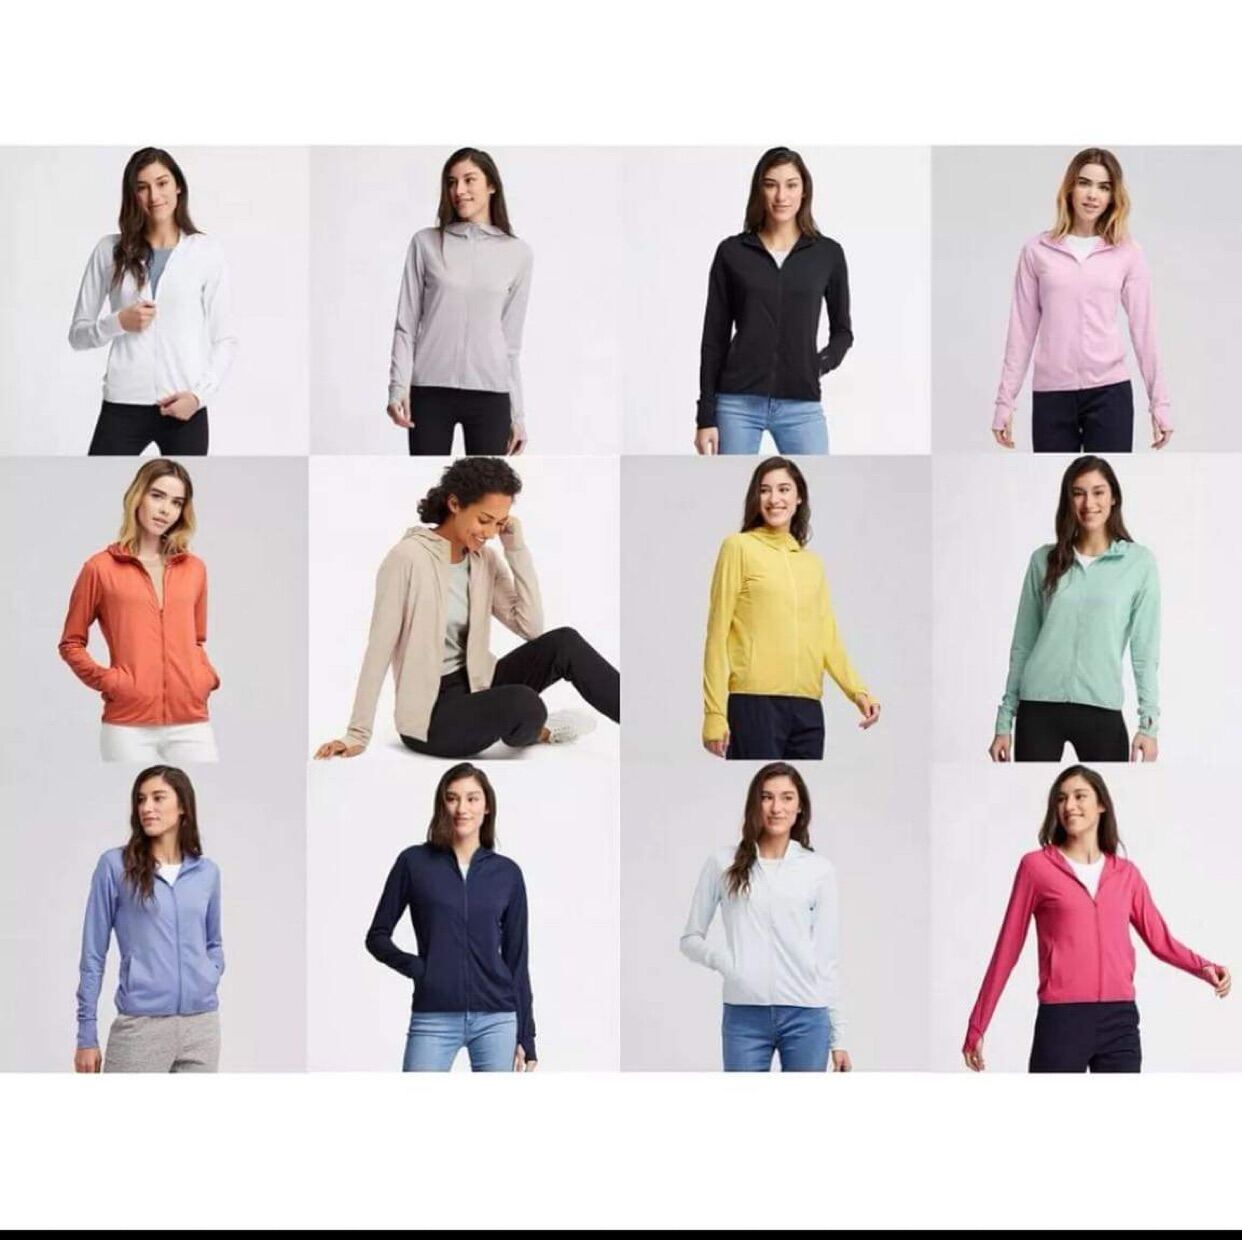 Áo chống nắng cotton Uniqlo 2017 màu be 30 NATURAL  Shop Mẹ Bi